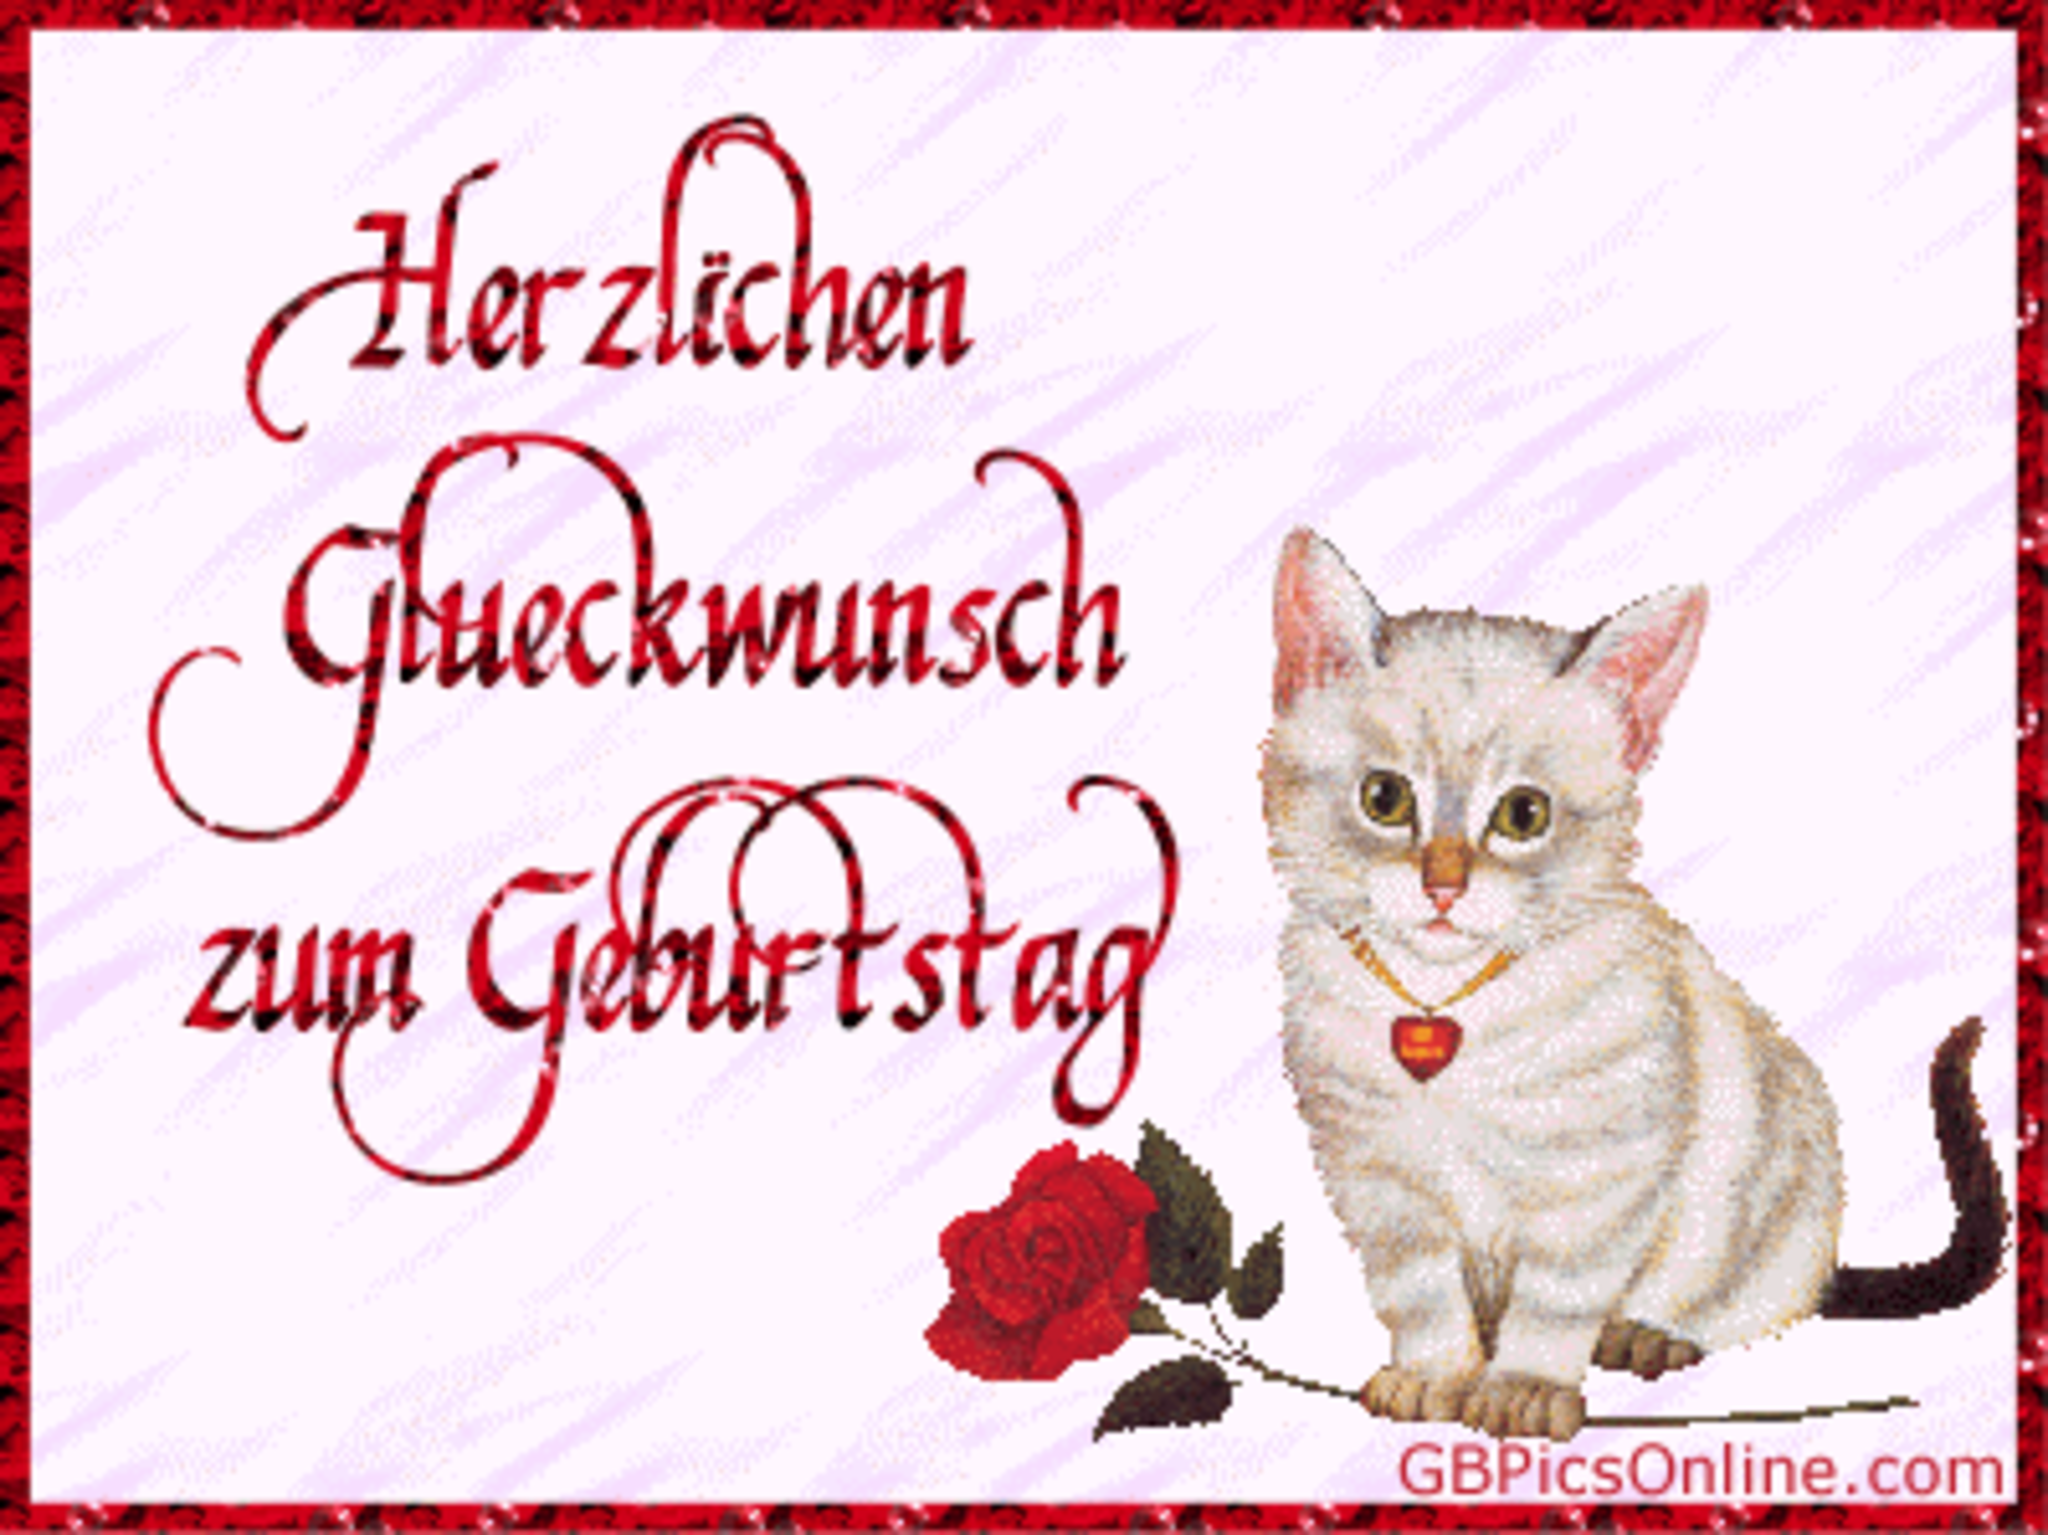 Поздравление мужчине на немецком языке. Поздравления с днём рождения мужчине на немецком языке. Поздравительная открытка с днём рождения на немецком языке. Немецкие открытки с днем рождения. Поздравление с др на немецком.